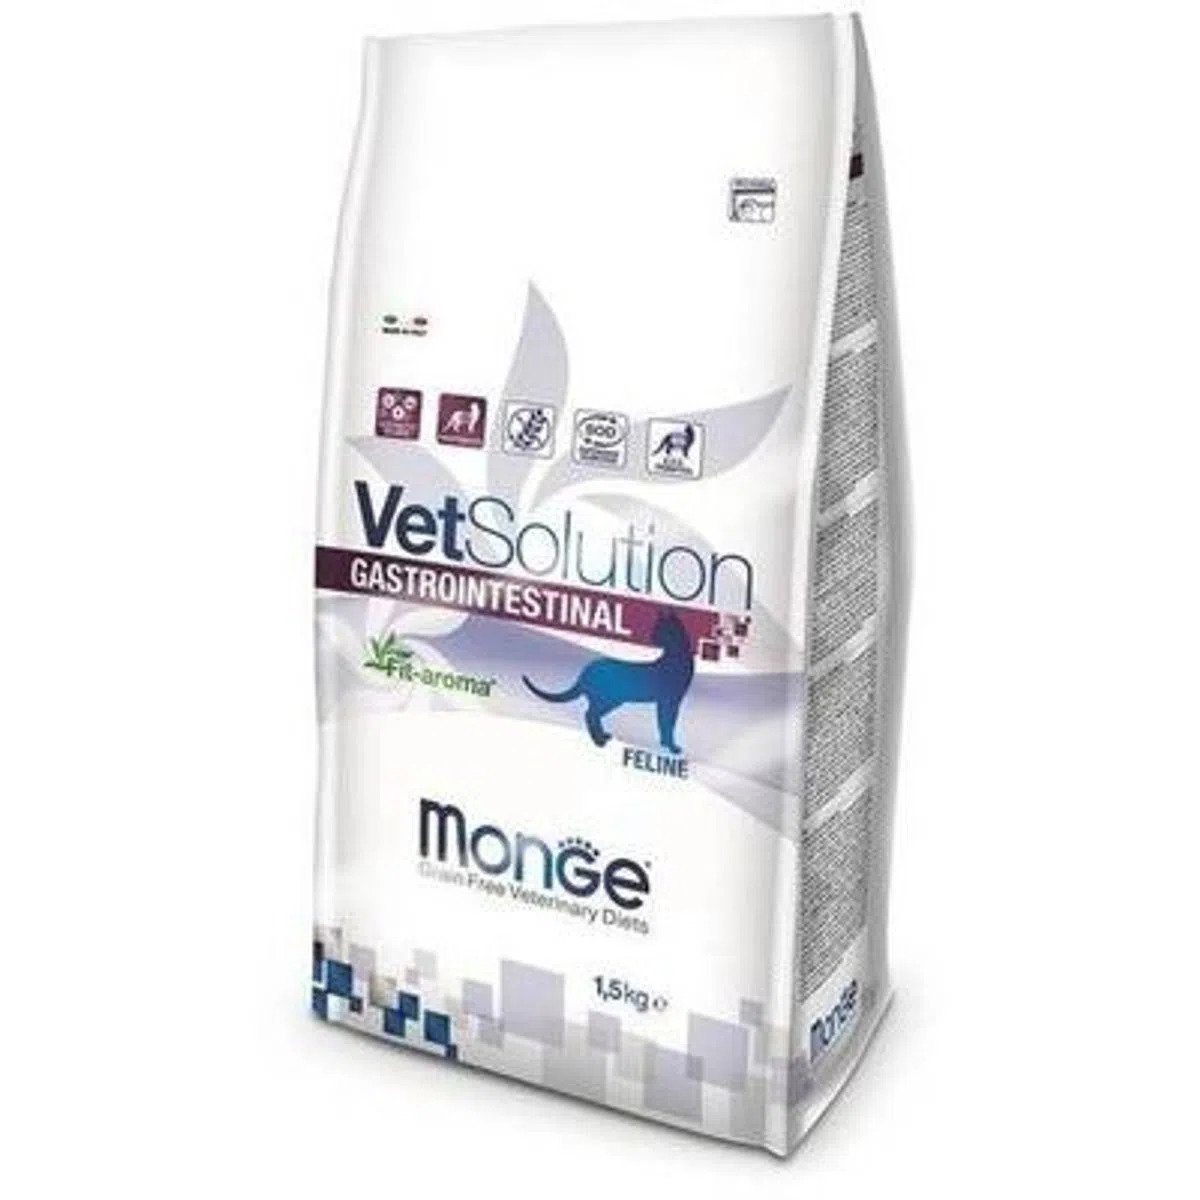 Monge Vetsolution Gastrointestinal Feline, 1.5 kg MONGE